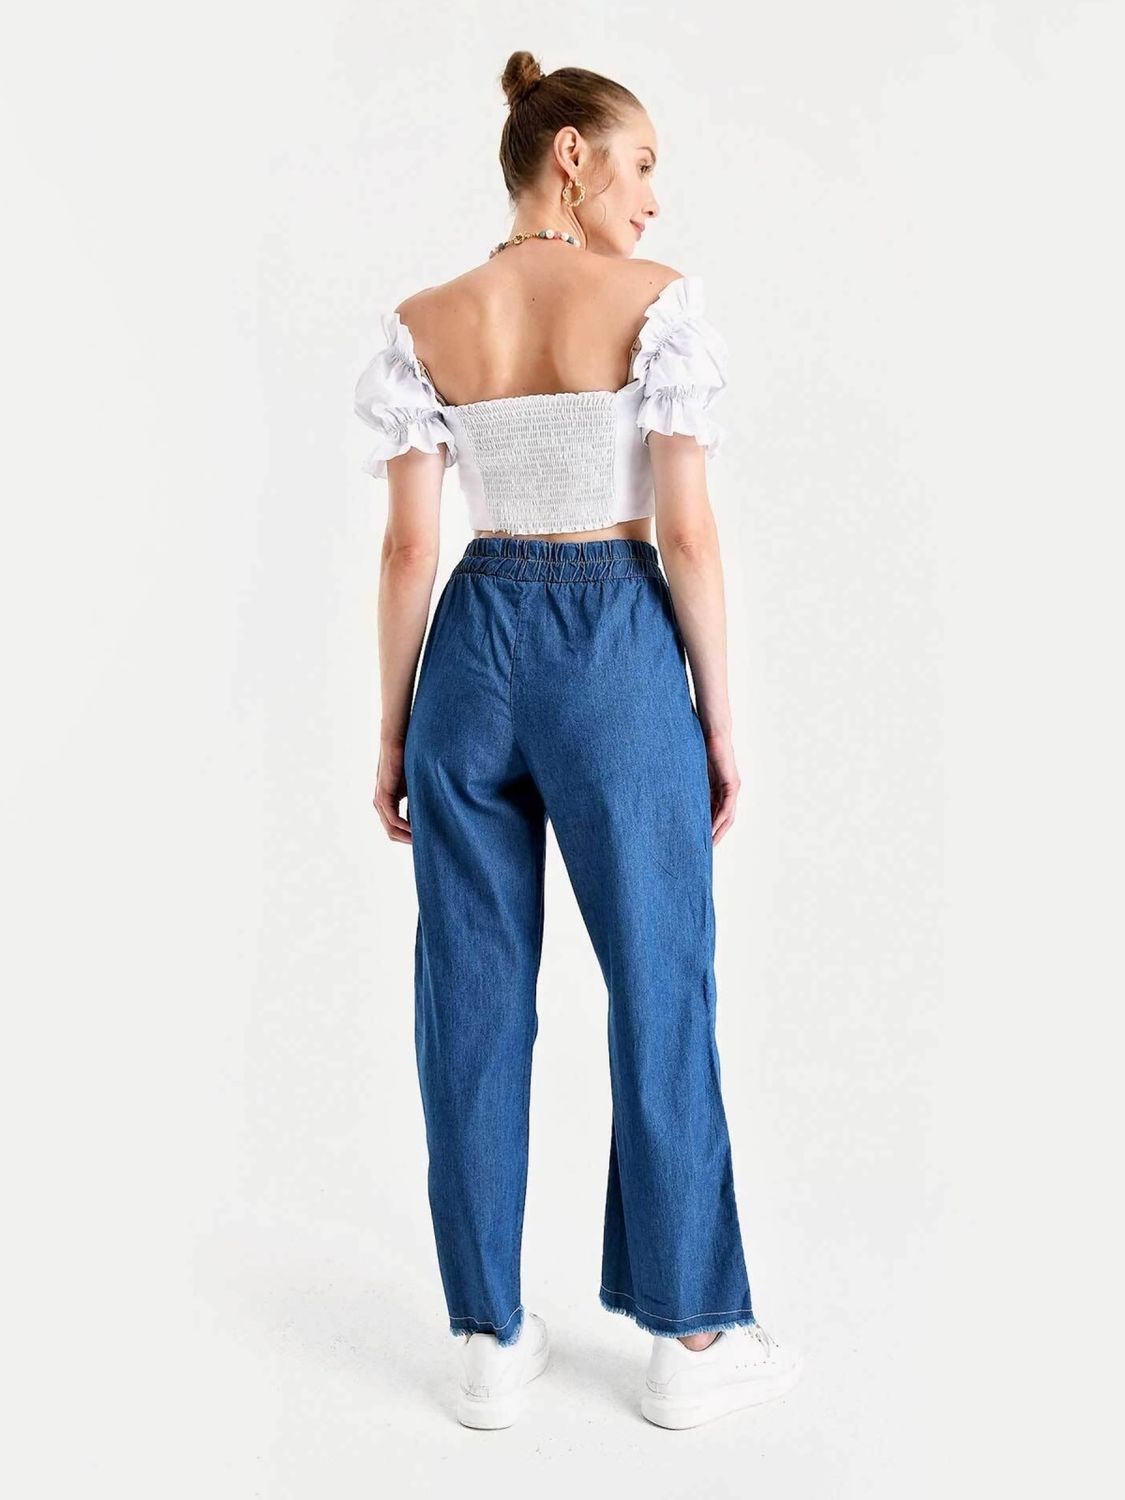 Женские джинсы прямого кроя с талией на резинке - фото